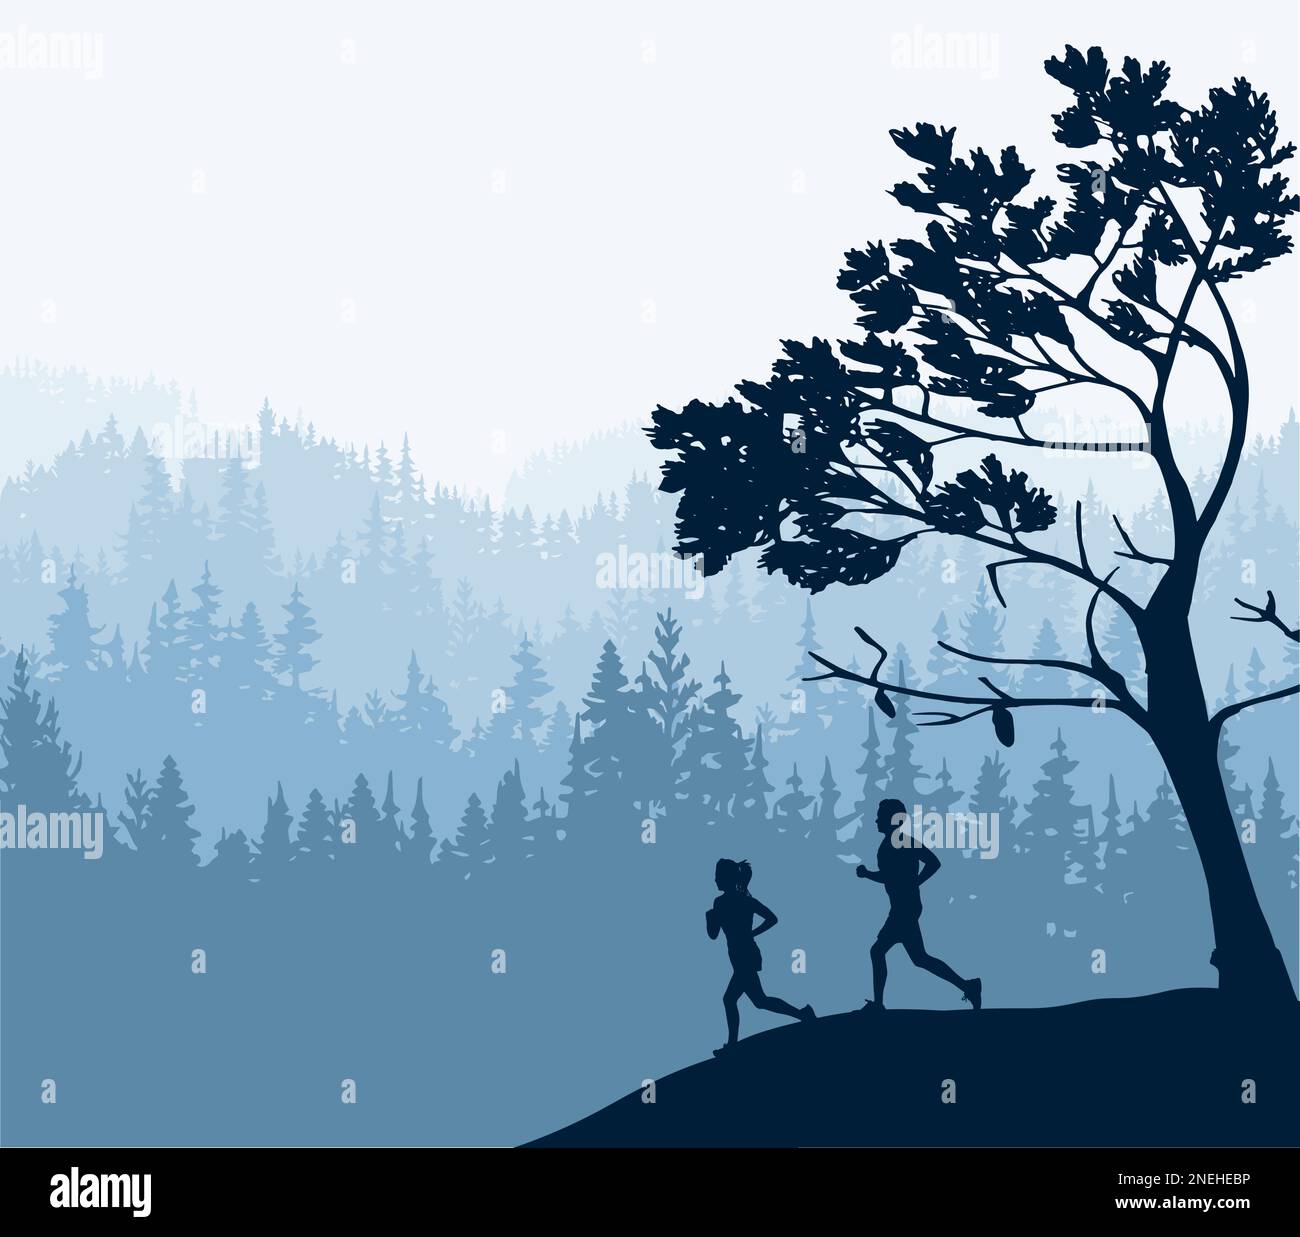 Silhouette von Jungen und Mädchen beim Joggen. Baum vorne, Waldhintergrund. Magische neblige Landschaft. Illustration, Abzeichen, Aufkleber. Stock Vektor